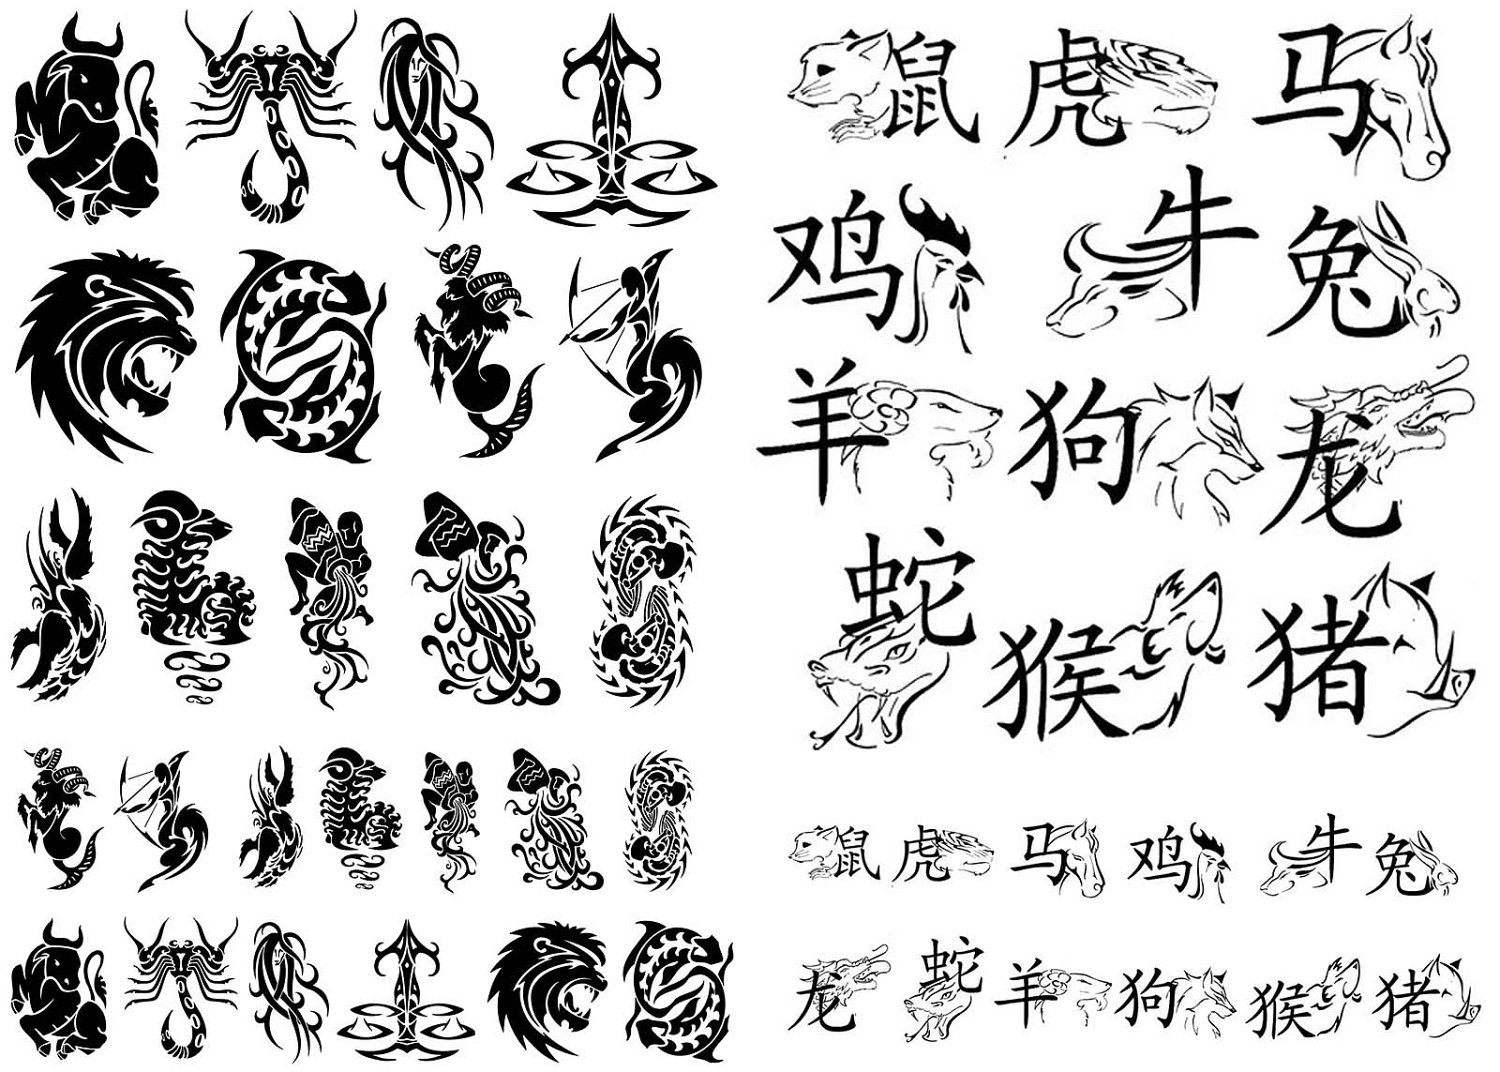 4. Free Tattoo Designs - Tribal, Zodiac, Cross, Star Tattoos ... - wide 9